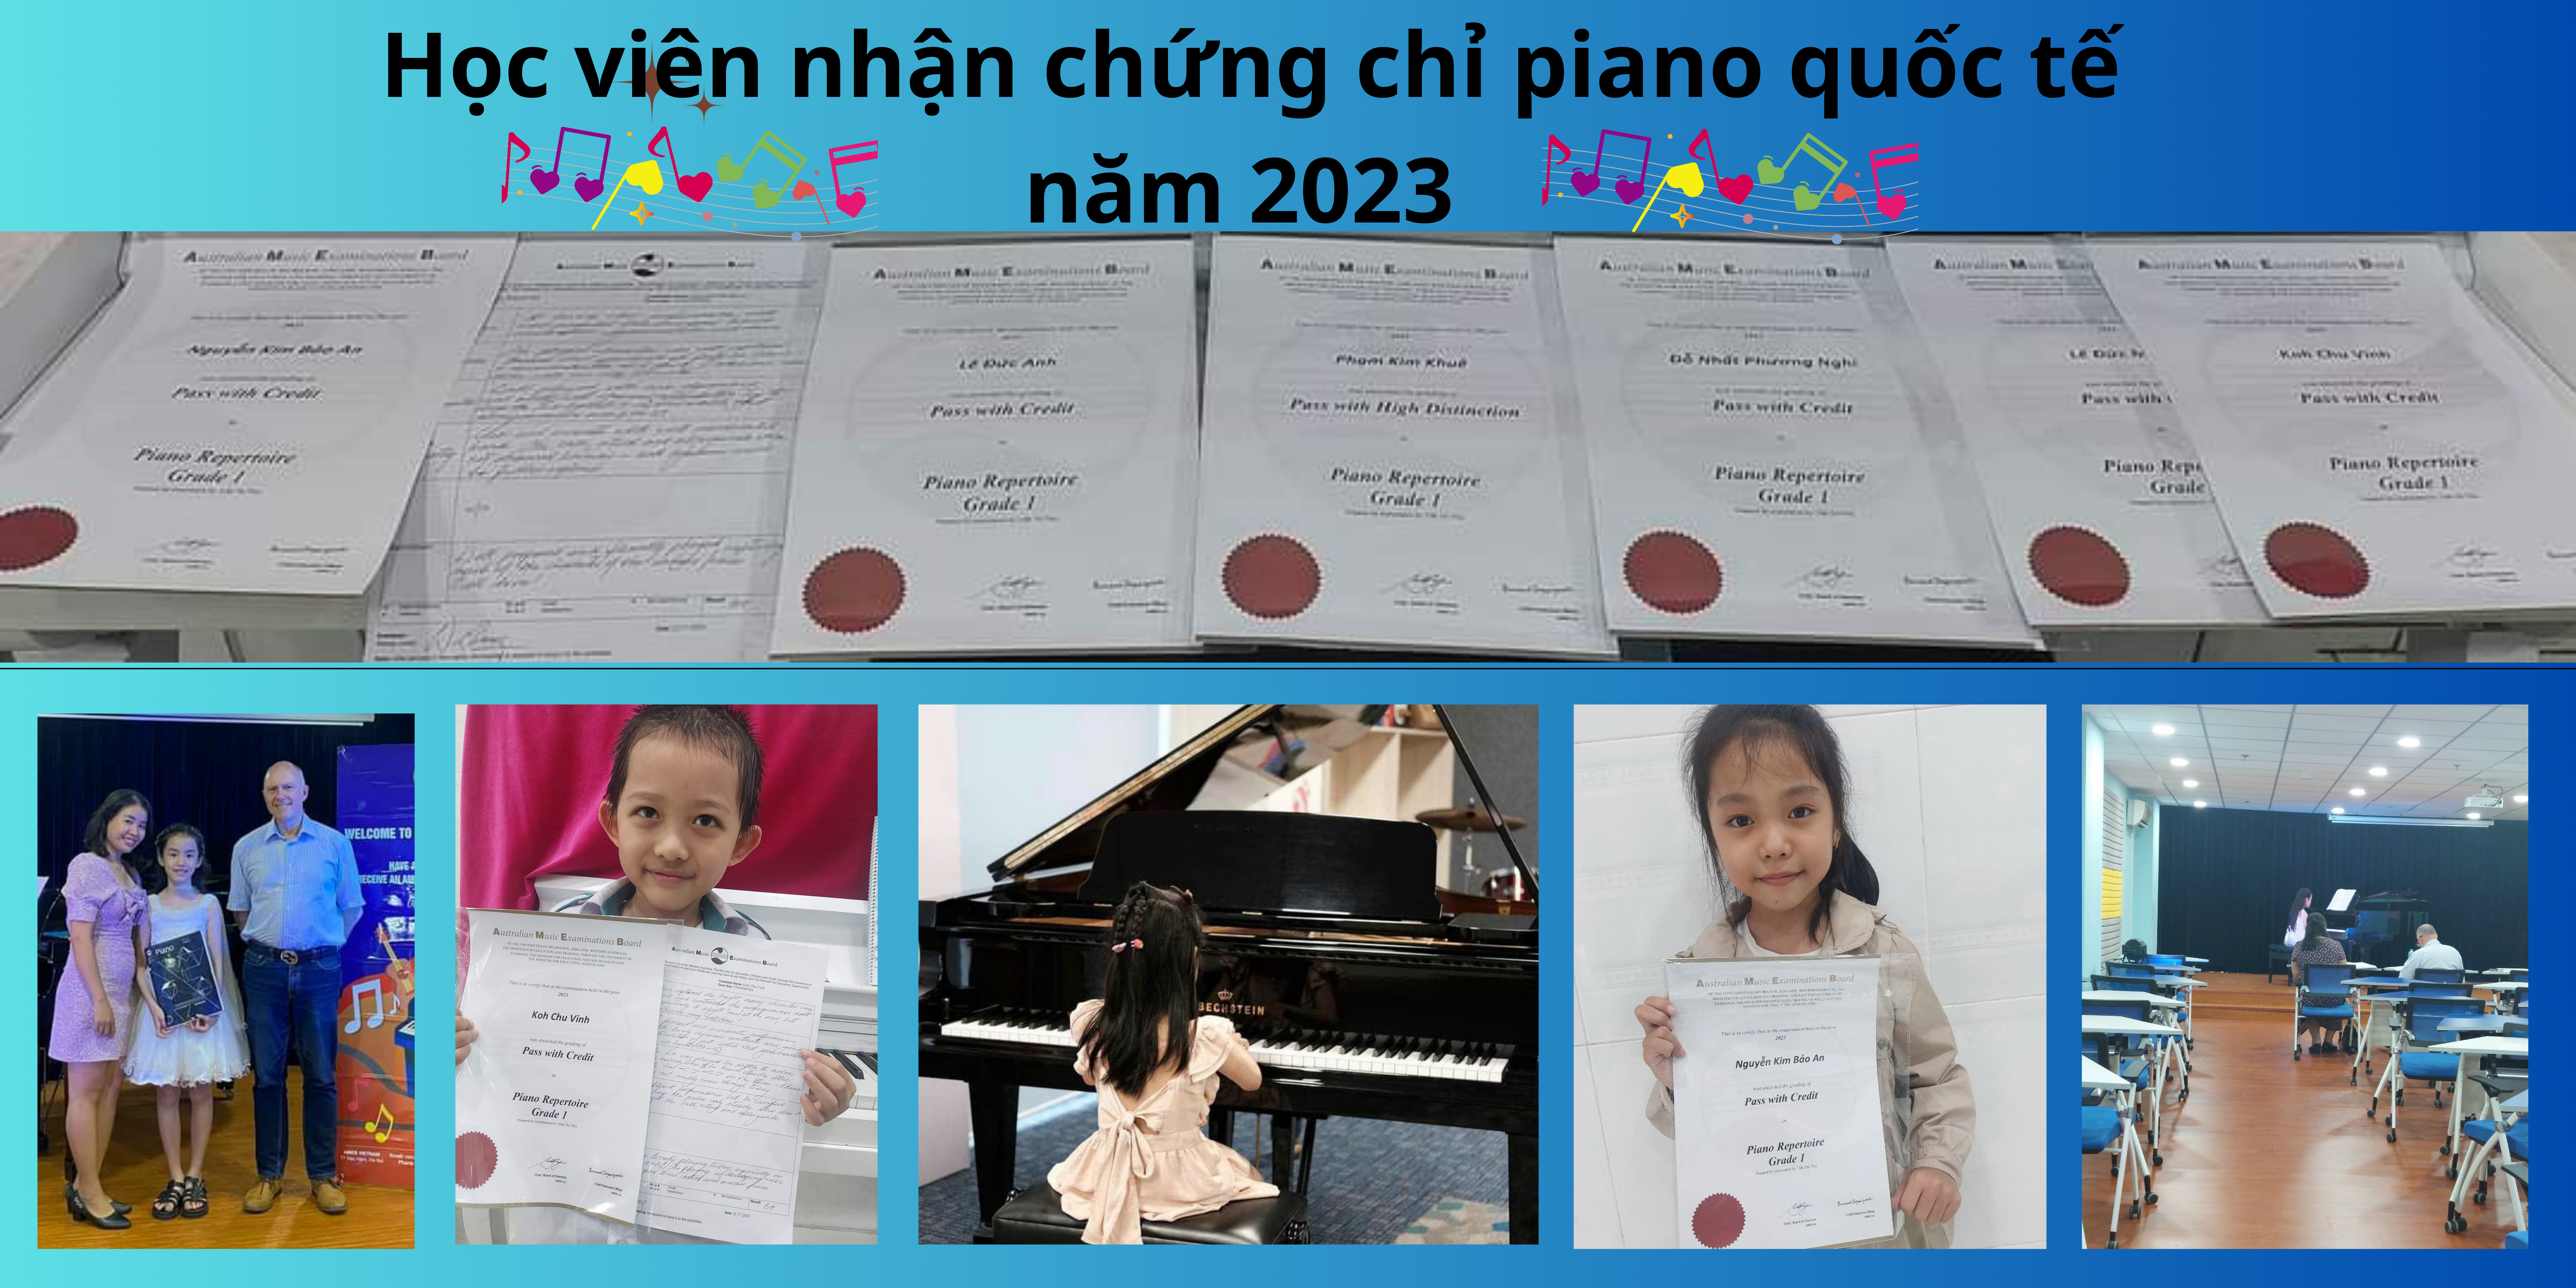 chứng chỉ piano quốc tế năm 2023 